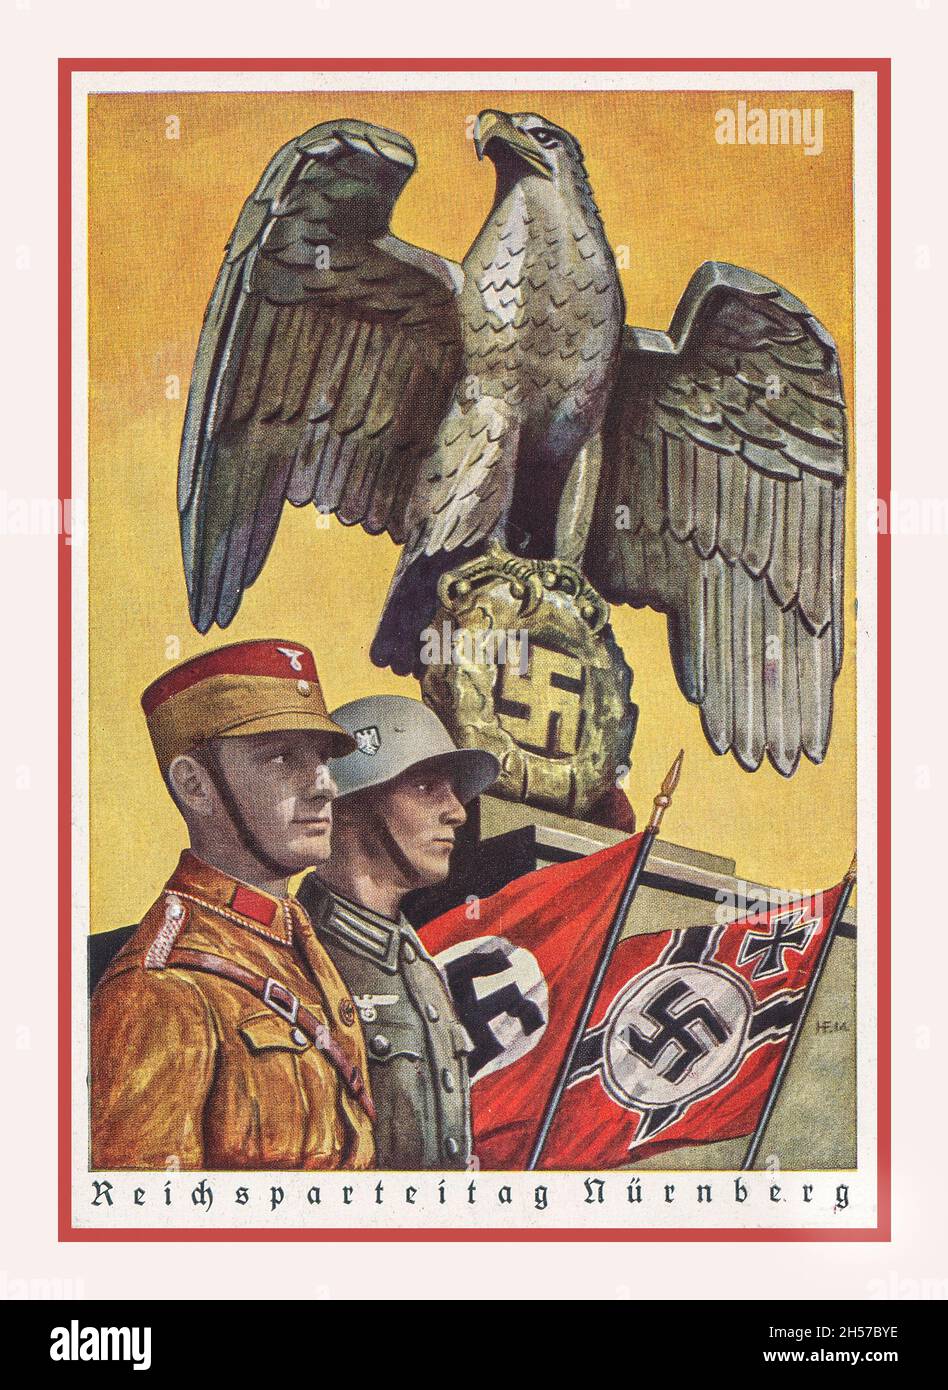 REICHSPARTEITAG NÜRNBERG 1939, Deutsches Adler- und Hakenkreuzsymbol mit Wehrmachtsoldat neben braunem Hemd SA 'Sturmabteilung' Sturmtruppen para Military Stockfoto